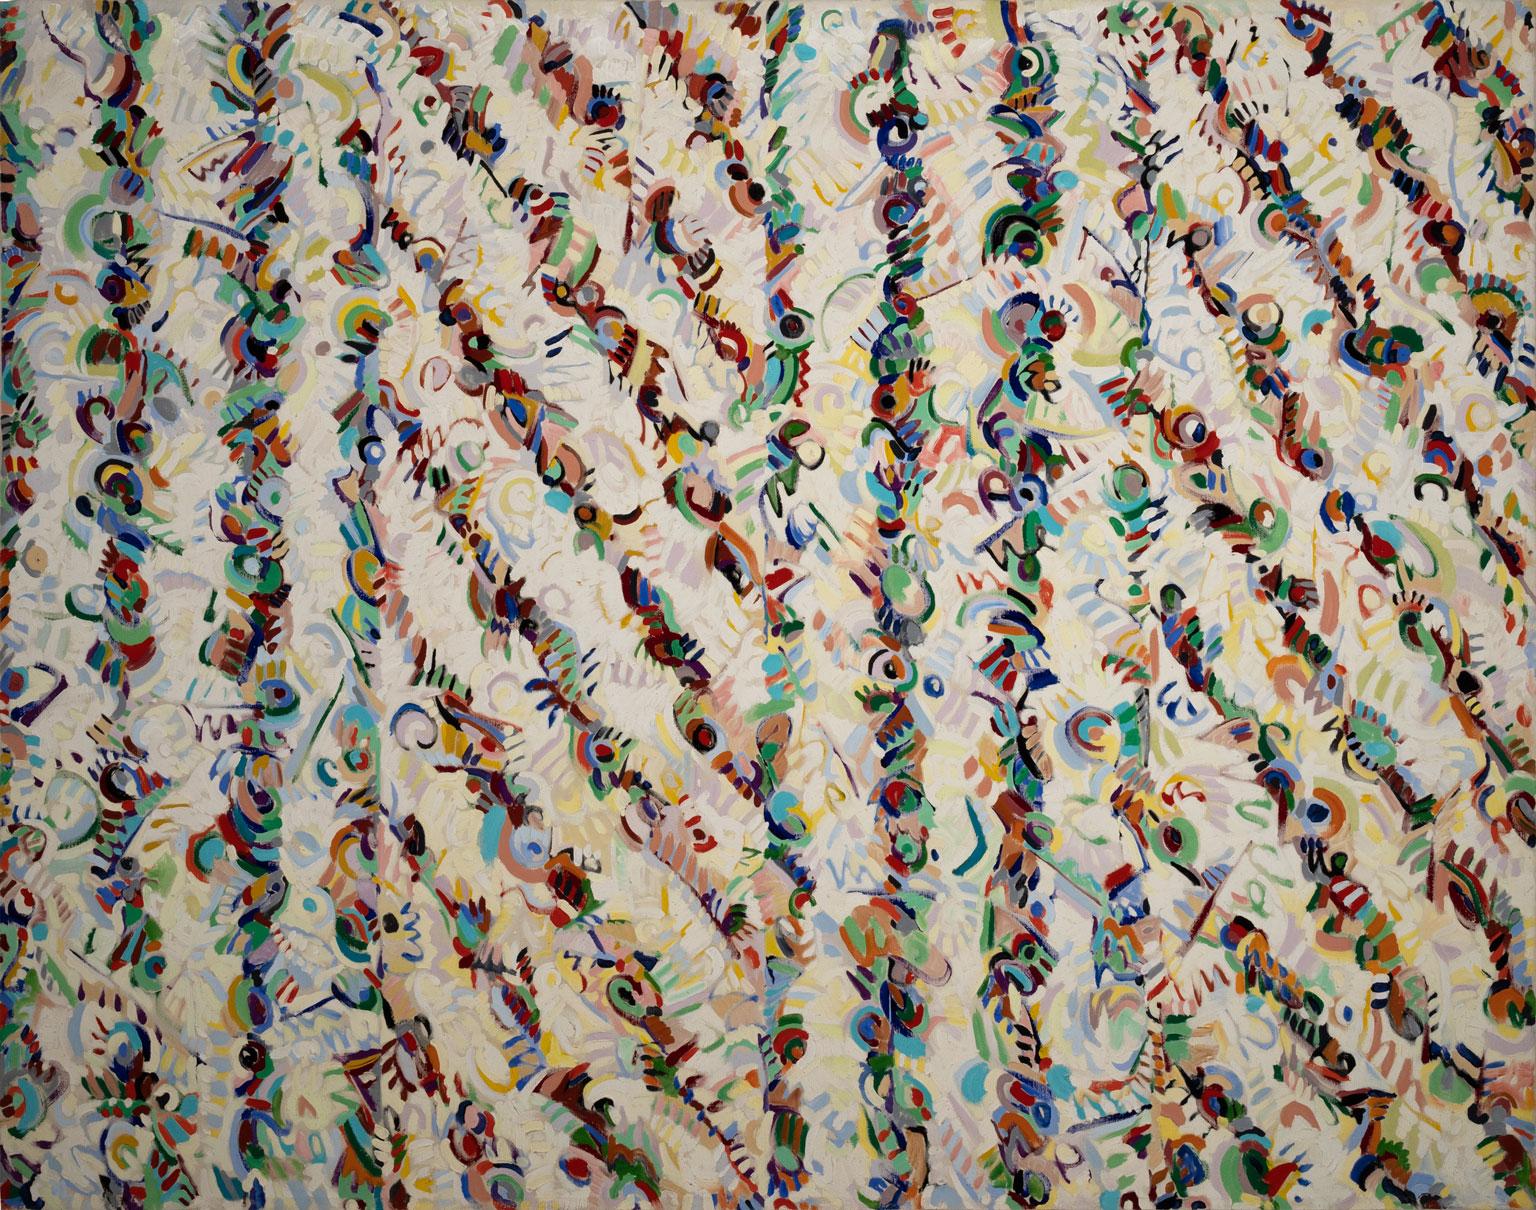 Untitled Abstract, une huile sur toile originale d'Edward Gilliam, est une pièce pour le vrai collectionneur. L'utilisation de la couleur et de l'épaisseur de la peinture par Gilliam captive immédiatement le spectateur. Il est très difficile de